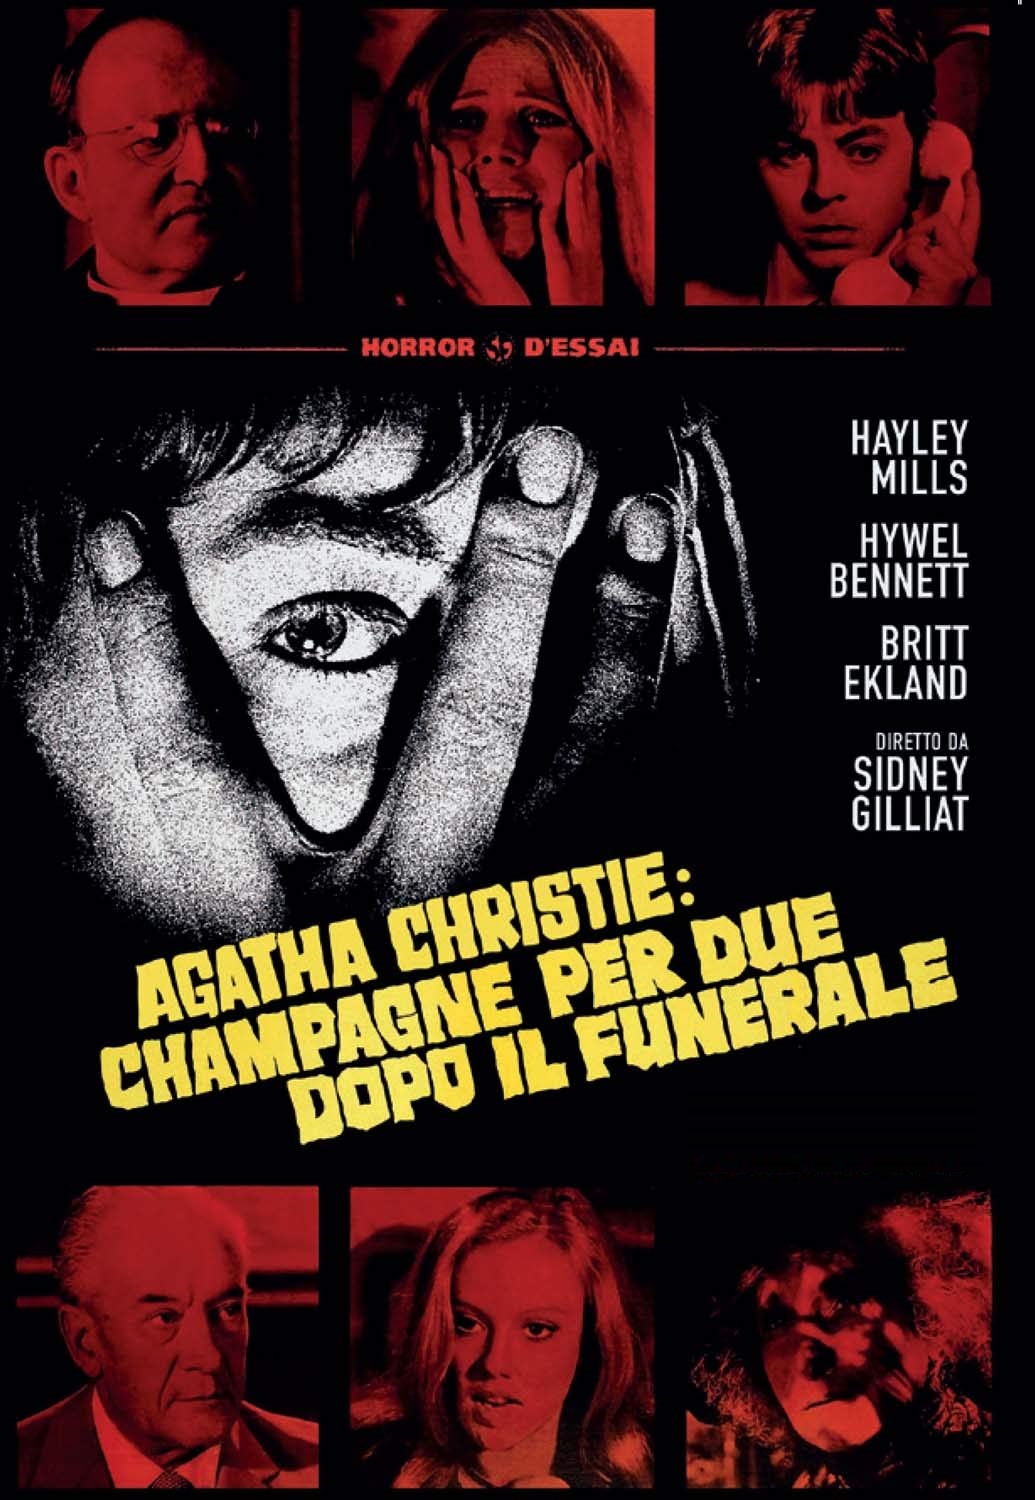 Champagne per due dopo il funerale [HD] (1972)